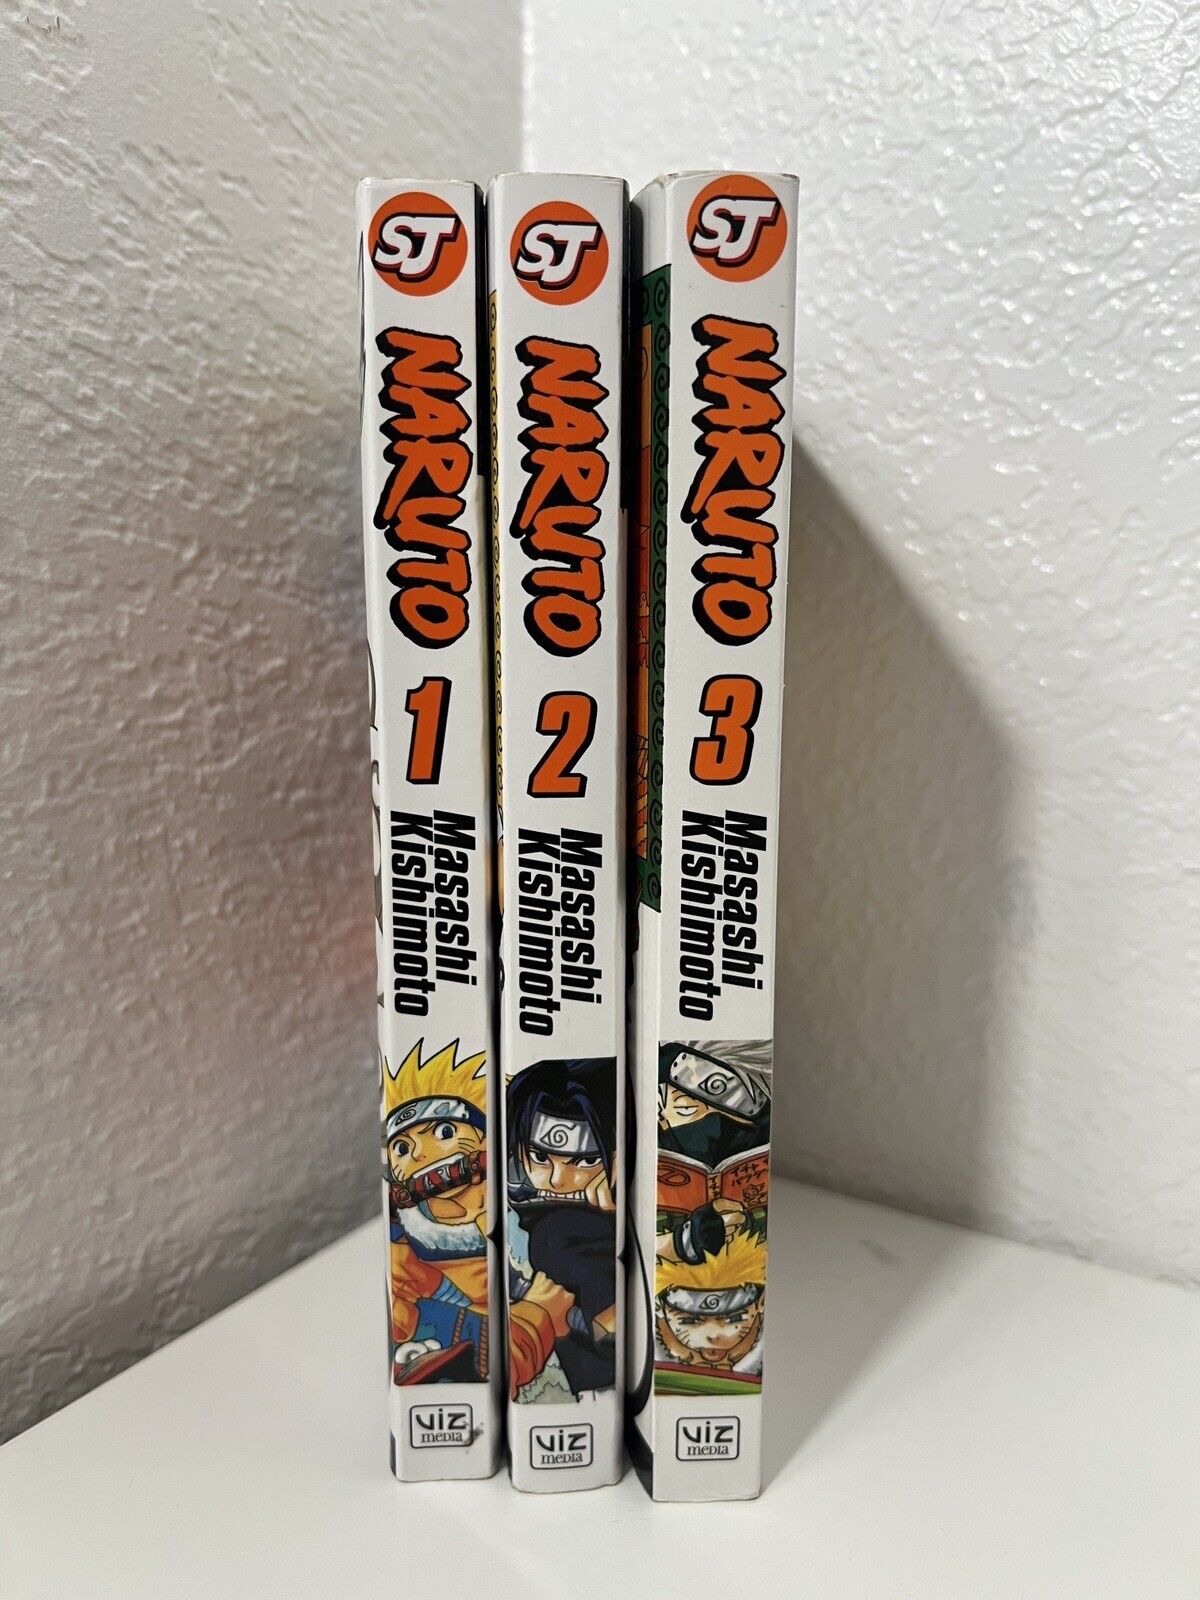 Naruto Shonen Jump Manga Volumes 1-3 Anime Graphic Novels Kishimoto Books